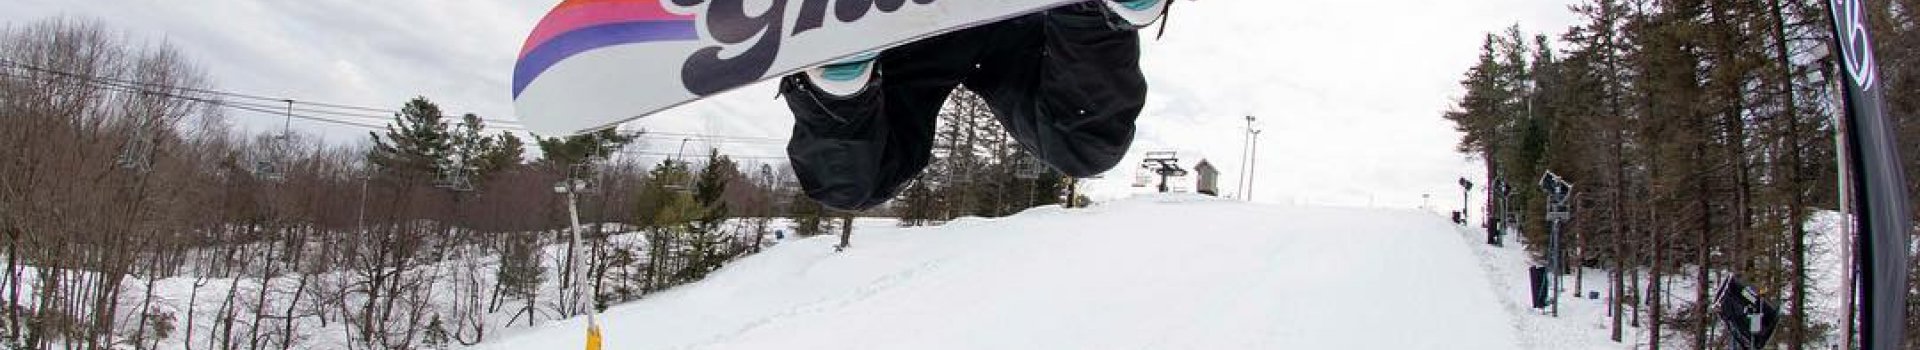 Deski snowboardowe Gnu, czyli najnowsze propozycje prosto z Kalifornii